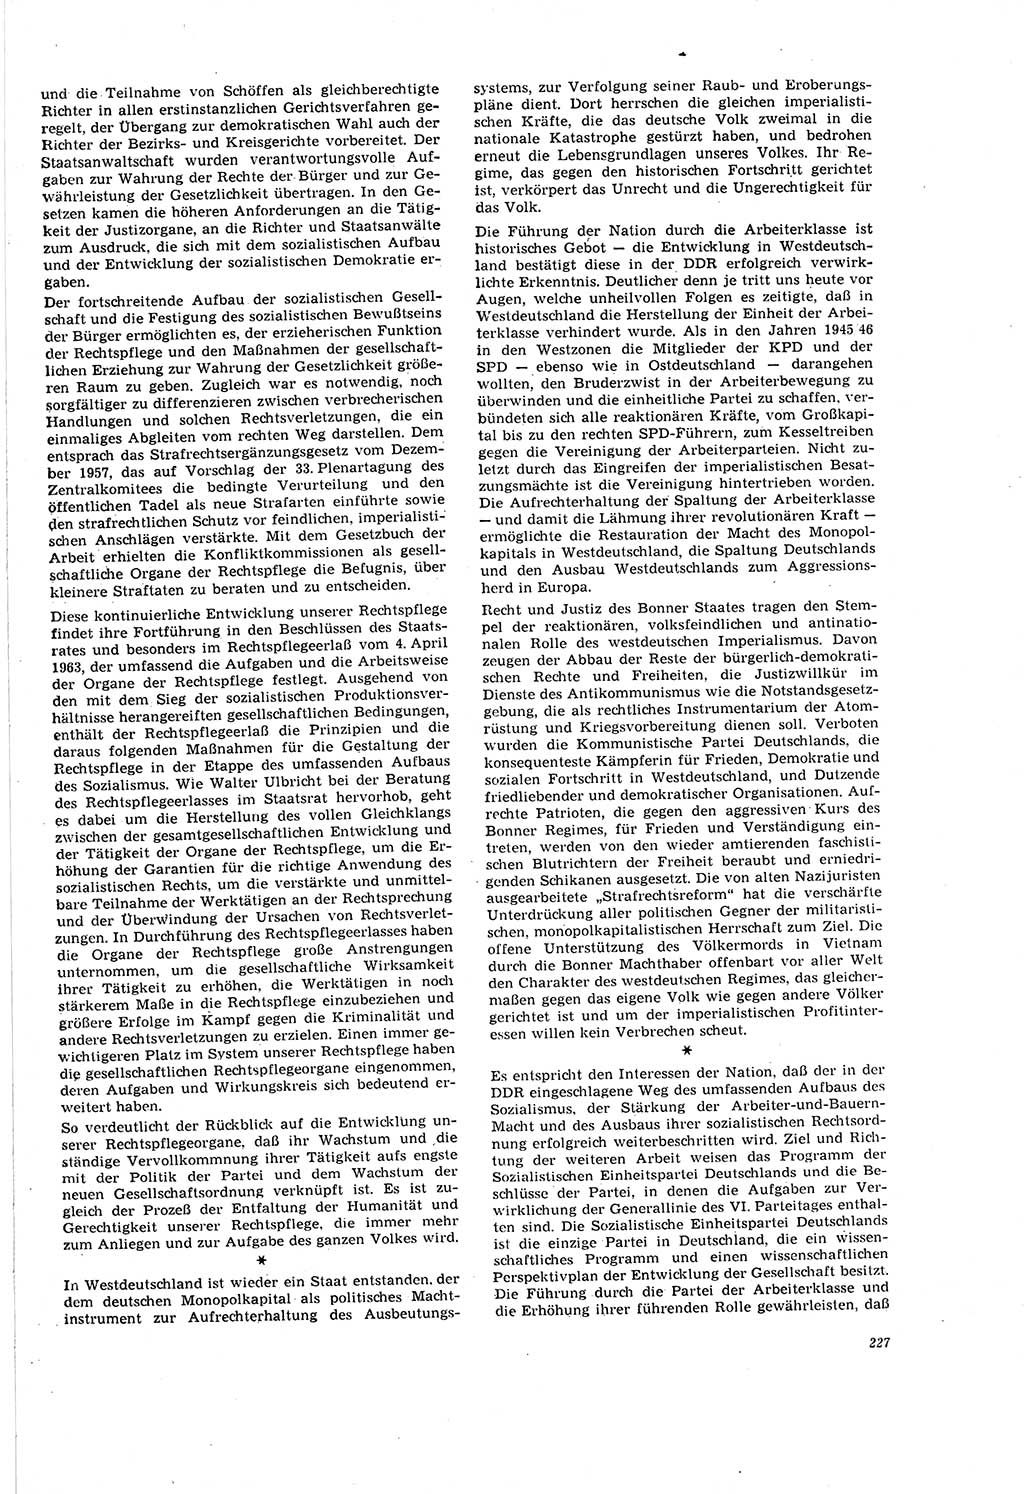 Neue Justiz (NJ), Zeitschrift für Recht und Rechtswissenschaft [Deutsche Demokratische Republik (DDR)], 20. Jahrgang 1966, Seite 227 (NJ DDR 1966, S. 227)